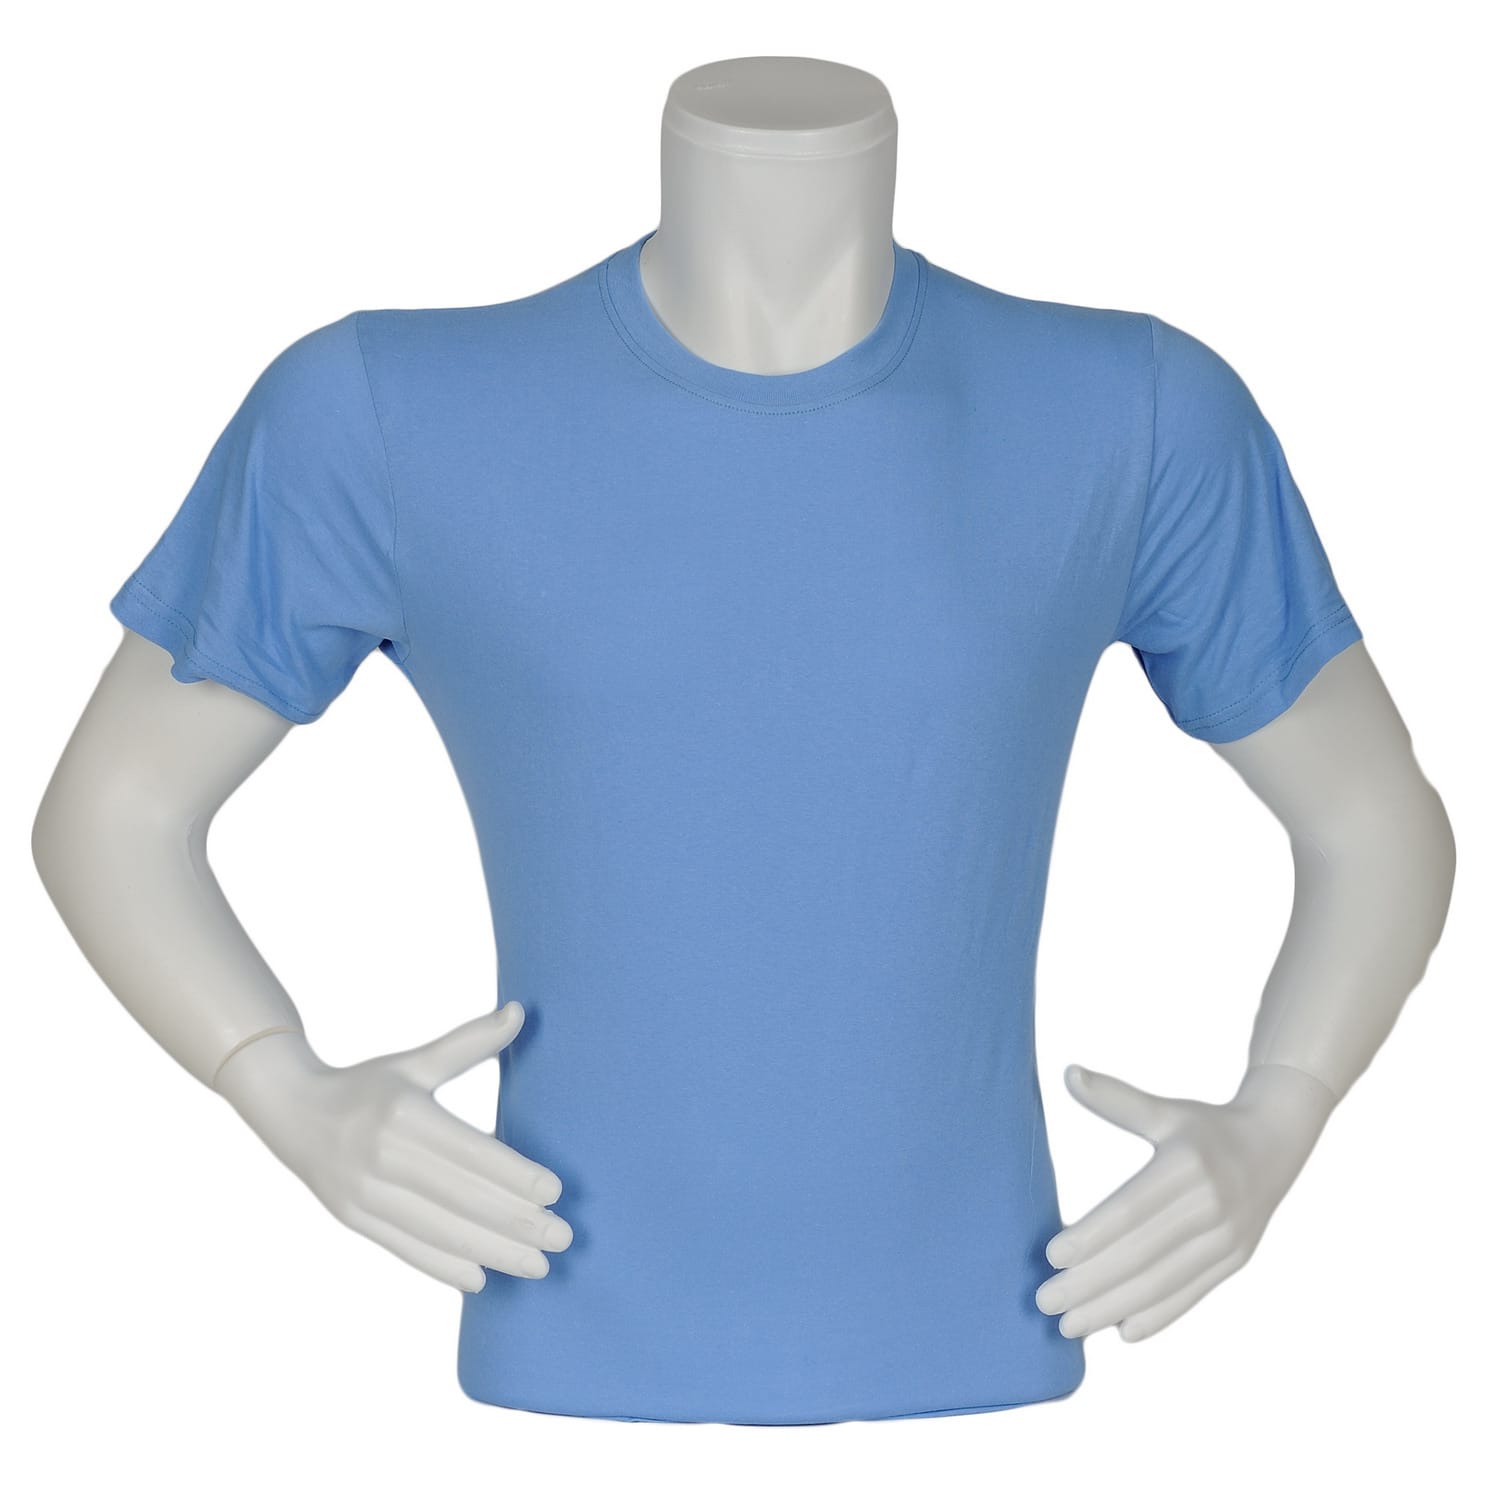 T-shirt Bisiklet Yaka Açık Mavi Renk